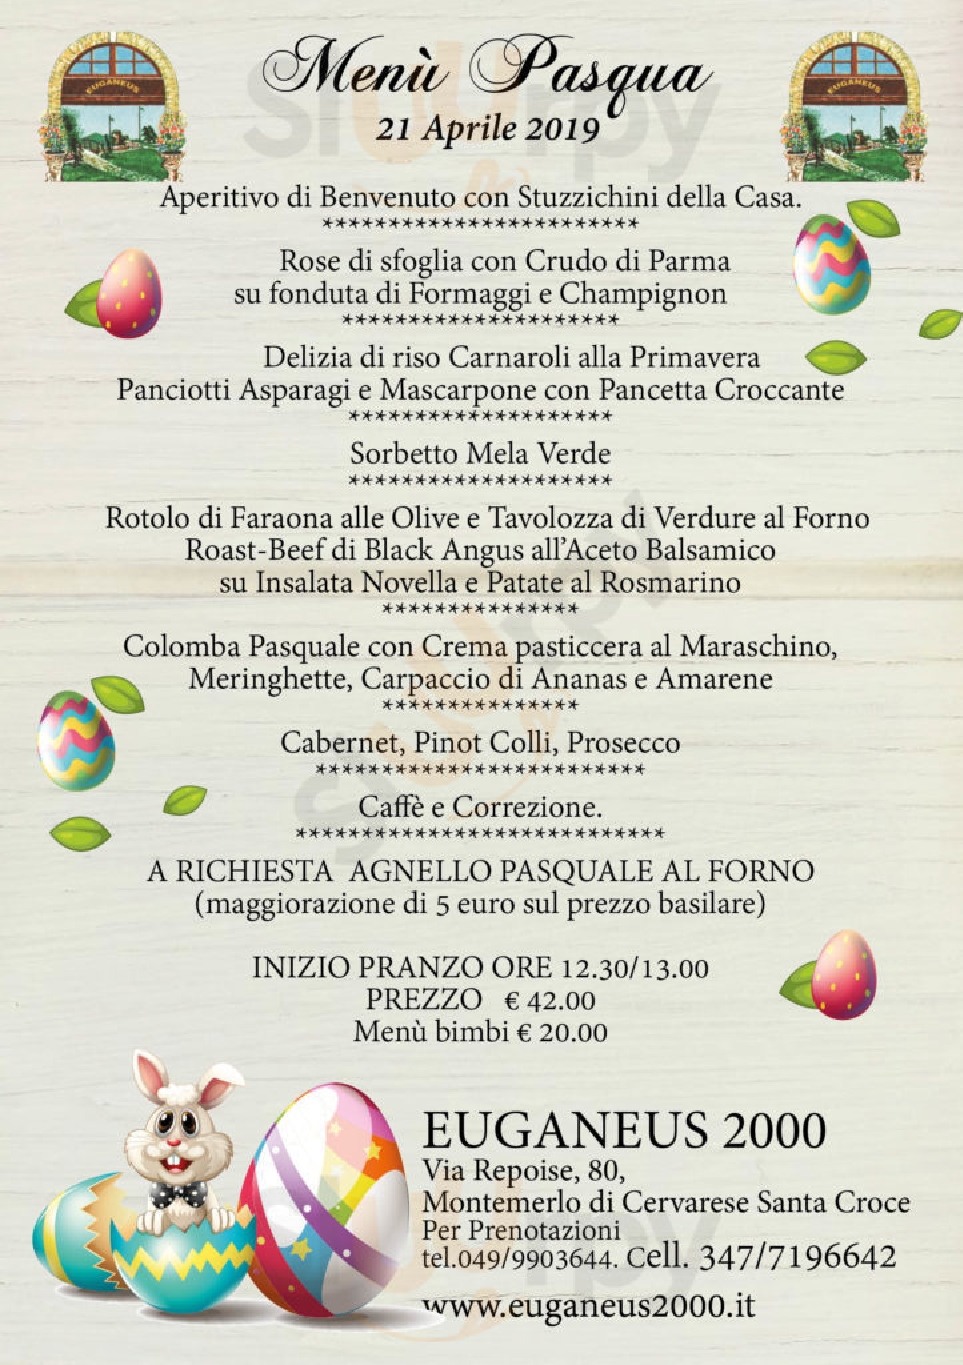 Euganeus Cervarese Santa Croce menù 1 pagina